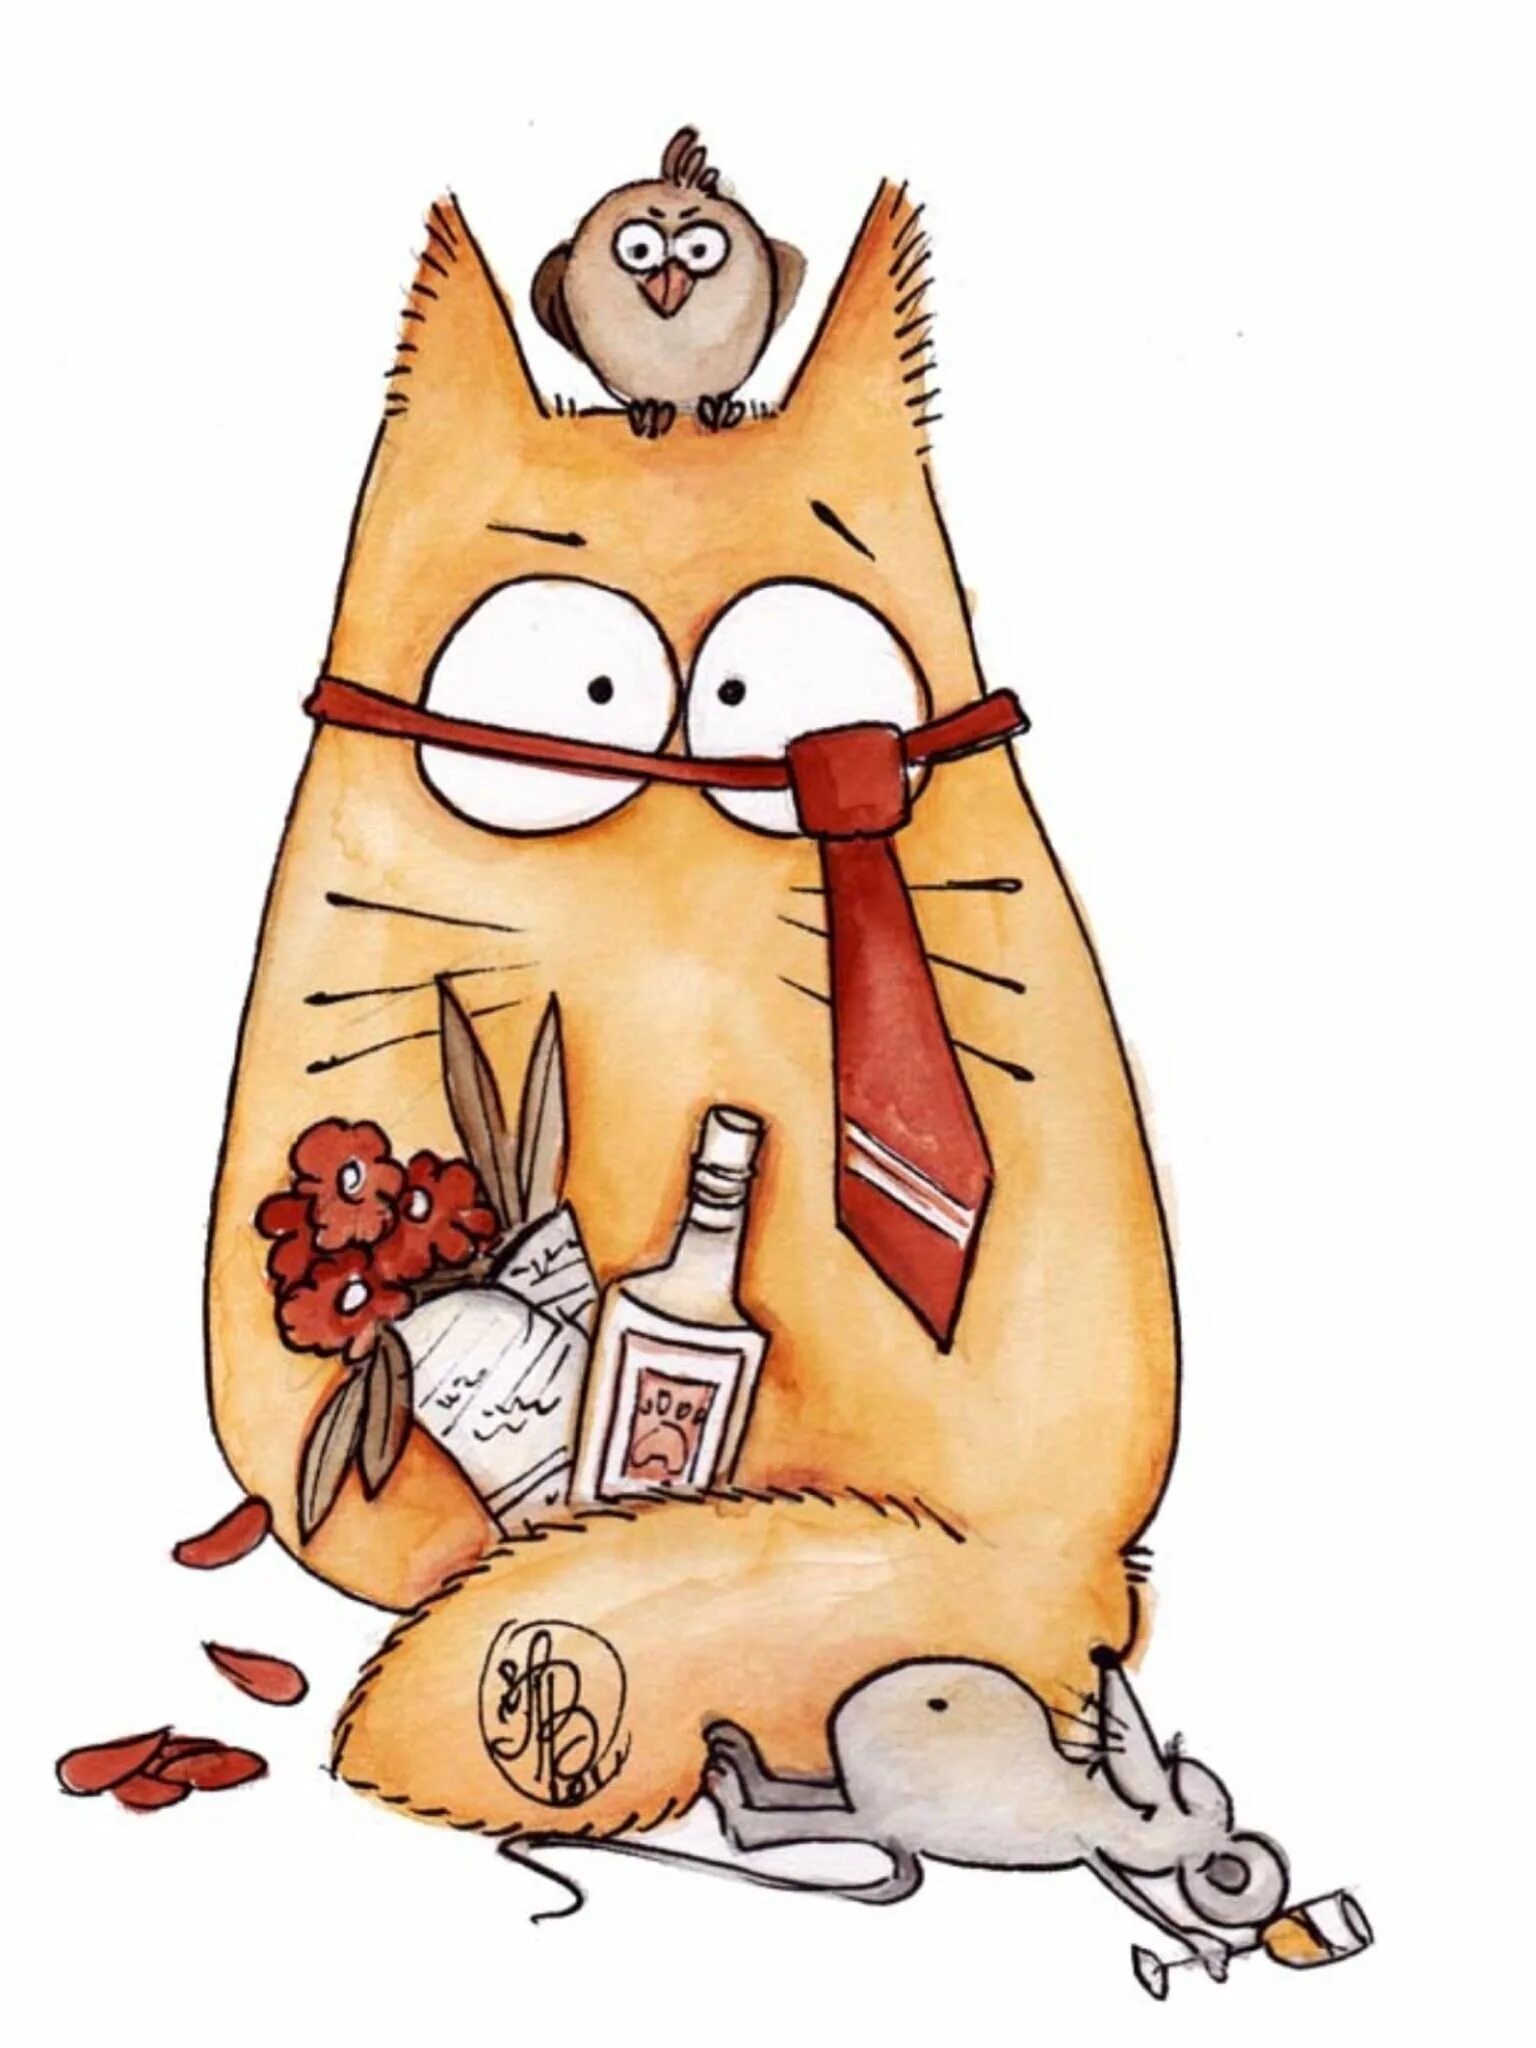 Котики Maria van Bruggen. Смешные коты Марии Ван Брюгген. Рисованные коты Марии Ван Брюгген. Смешные открытки с котом